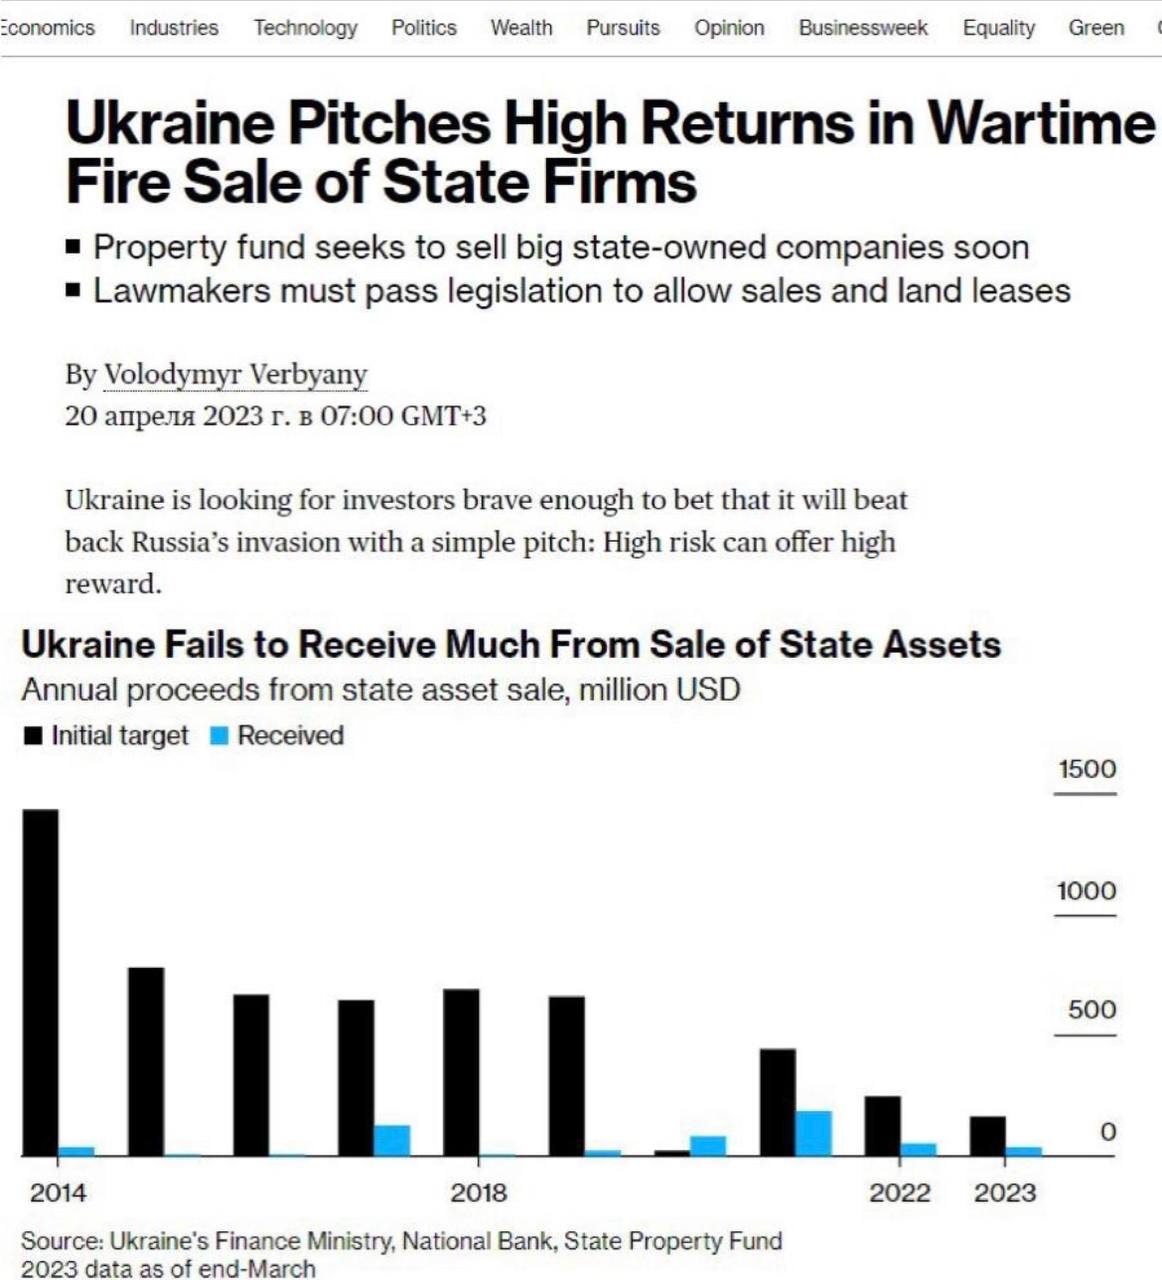 Фонд майна України має намір найближчим часом продати великі держкомпанії за заниженими цінами, щоби підтримати економіку на тлі війни, — Bloomberg